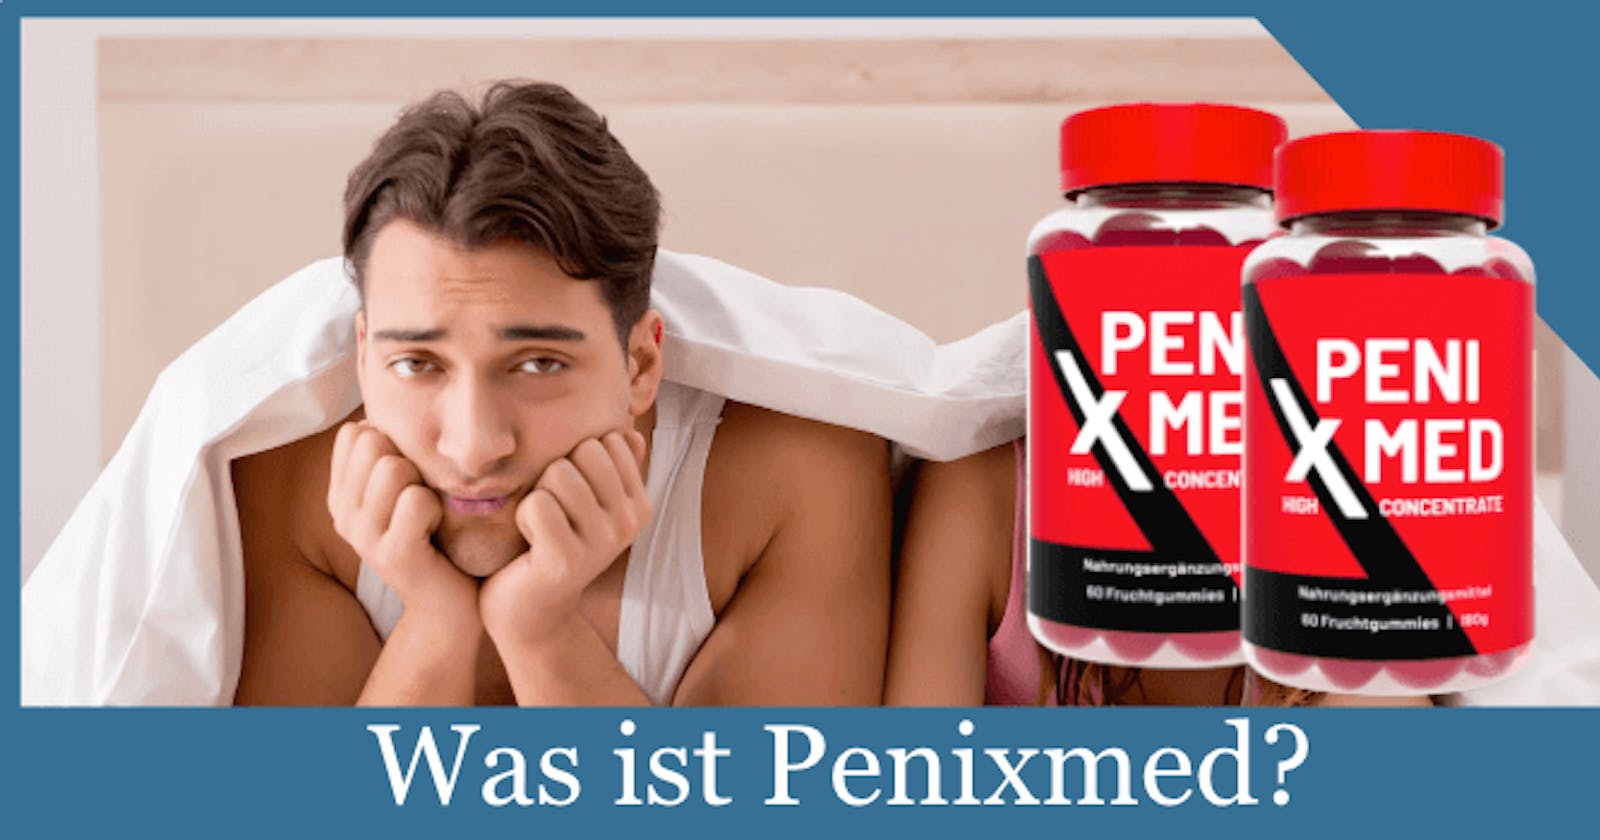 PeniXmed Male Enhancement DE AT CH Vorteil: Entdecken Sie Ihre Potenz